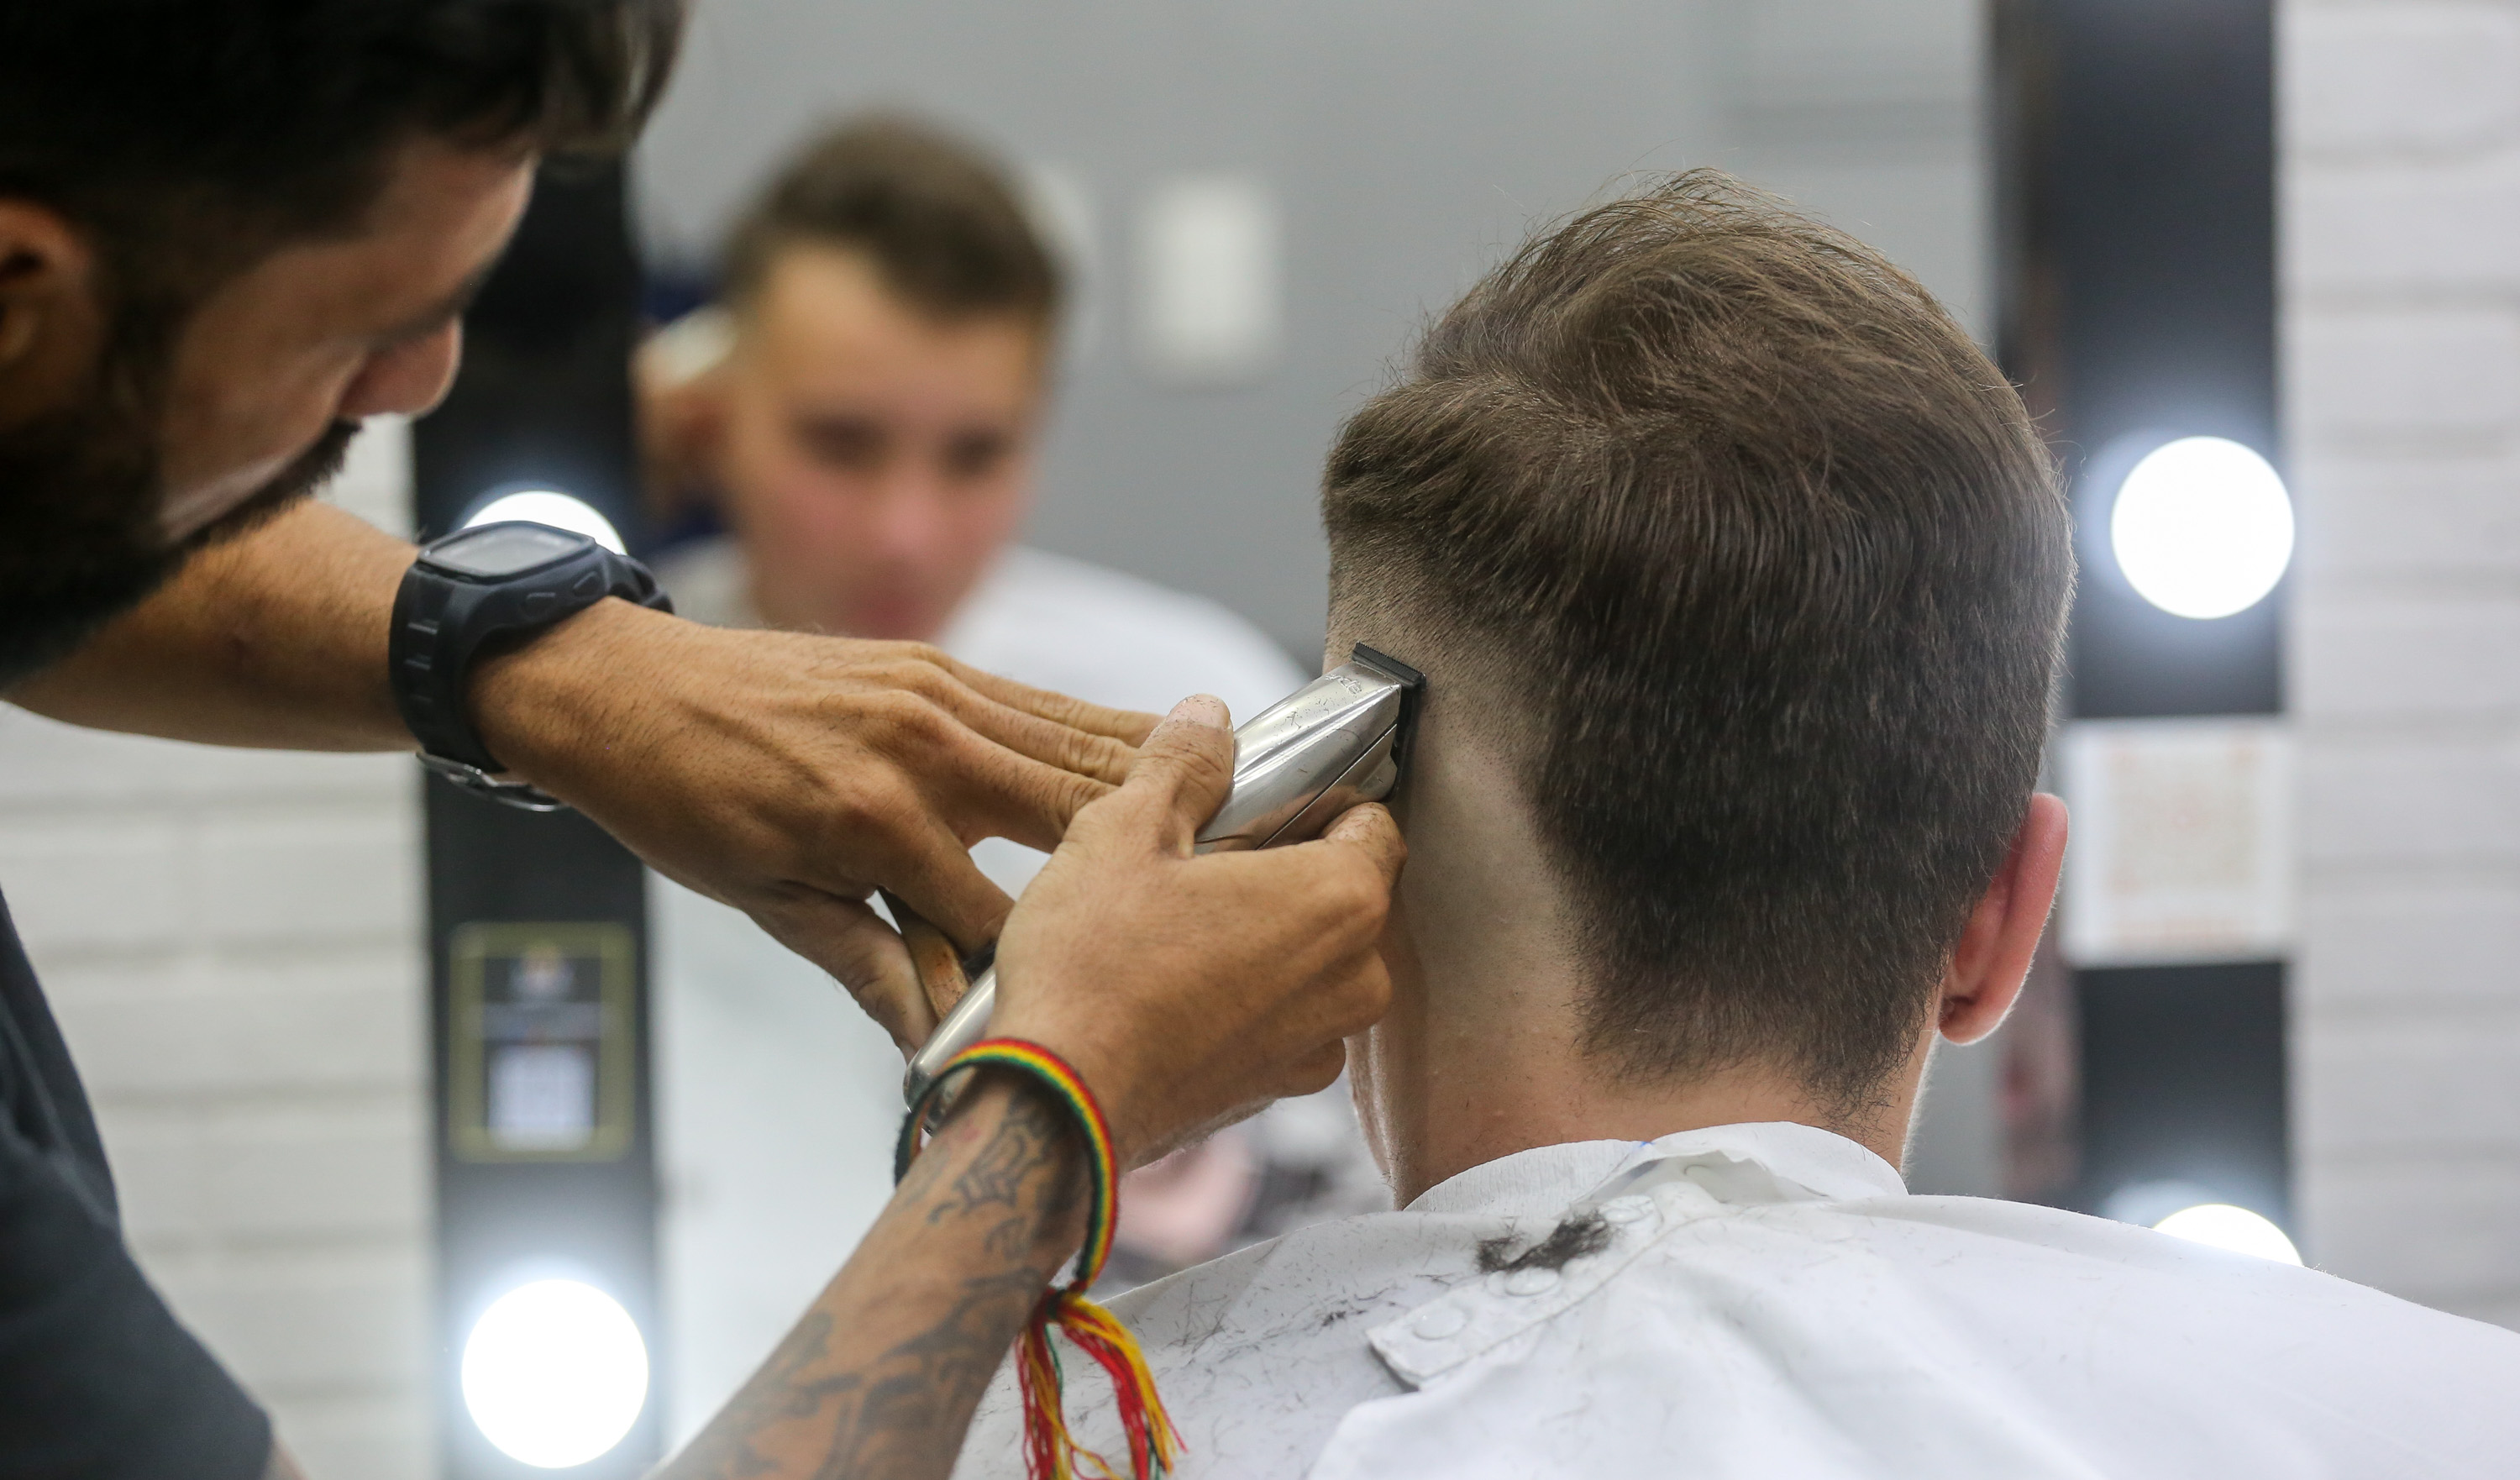 Barbearias de Fortaleza preparam serviços para o Dia dos Pais